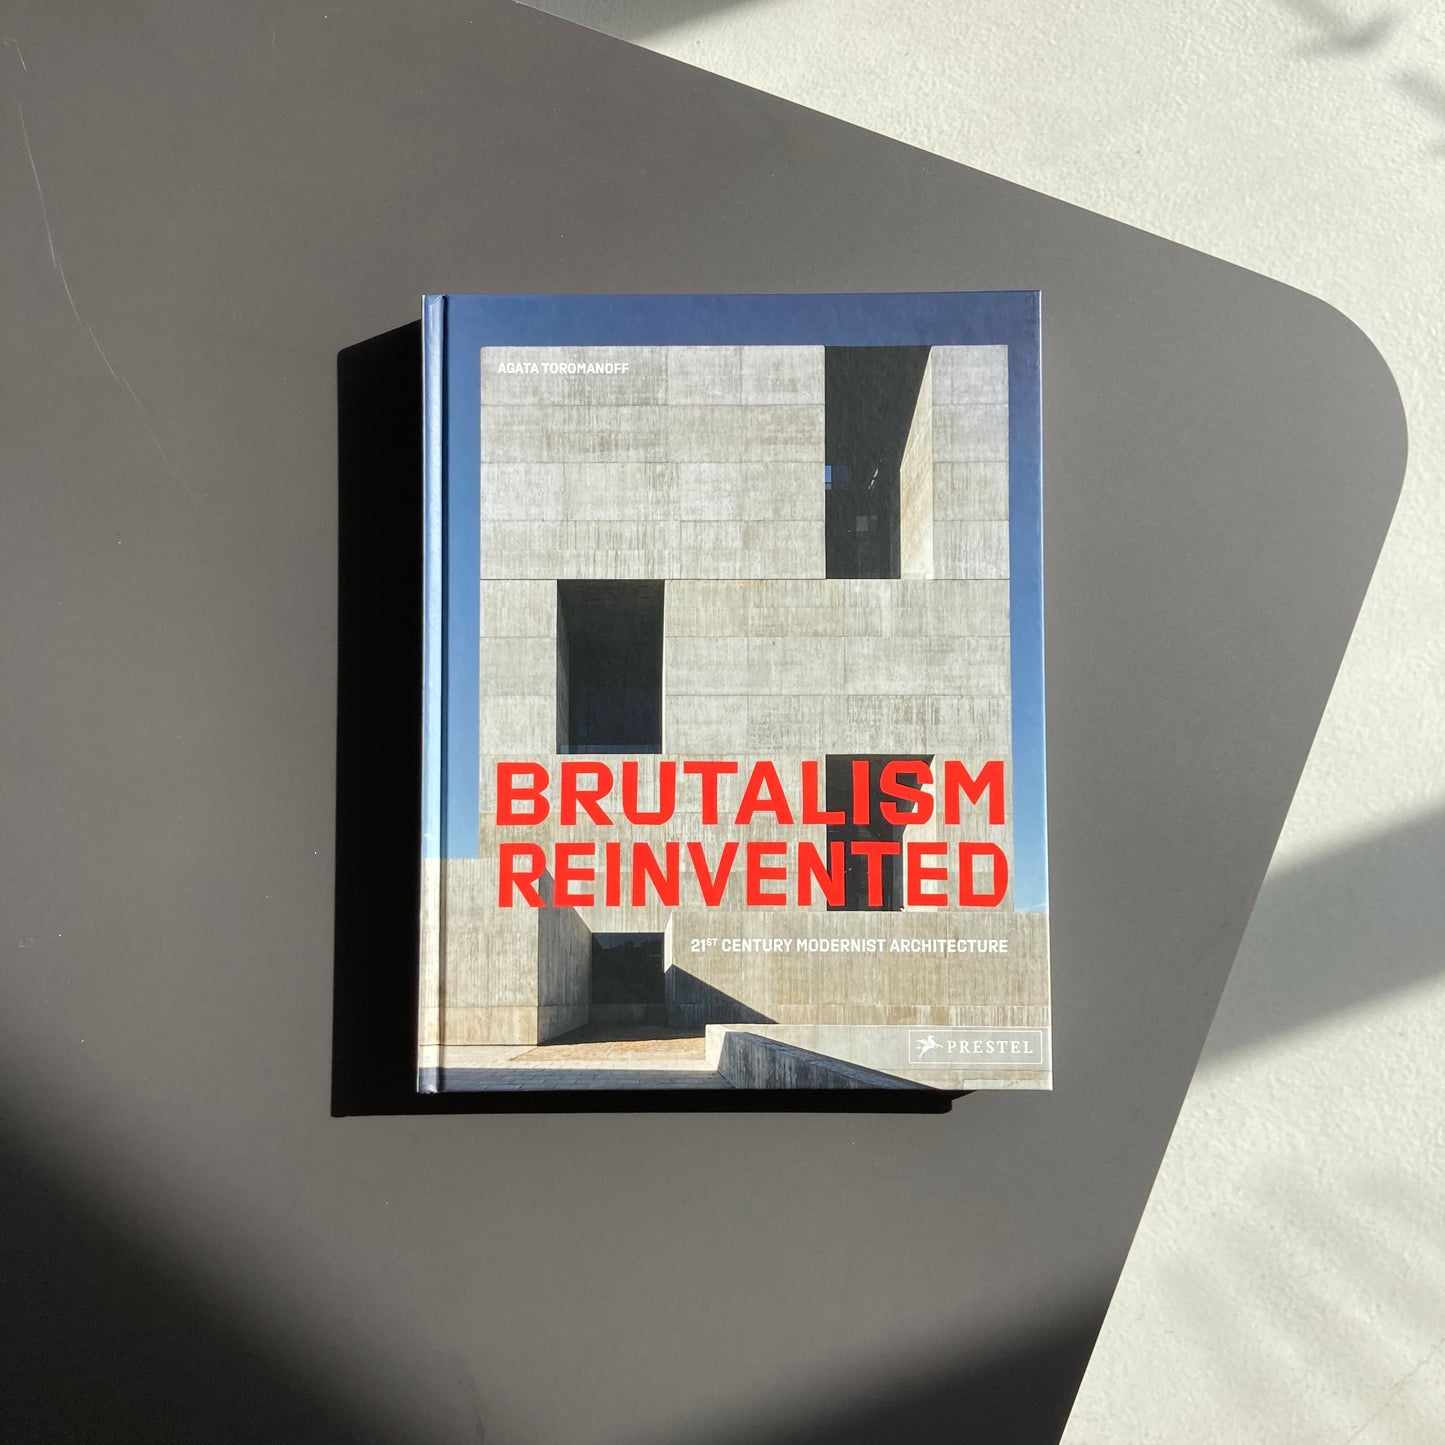 Brutalism Reinvented: 21st Century Modernist Architecture